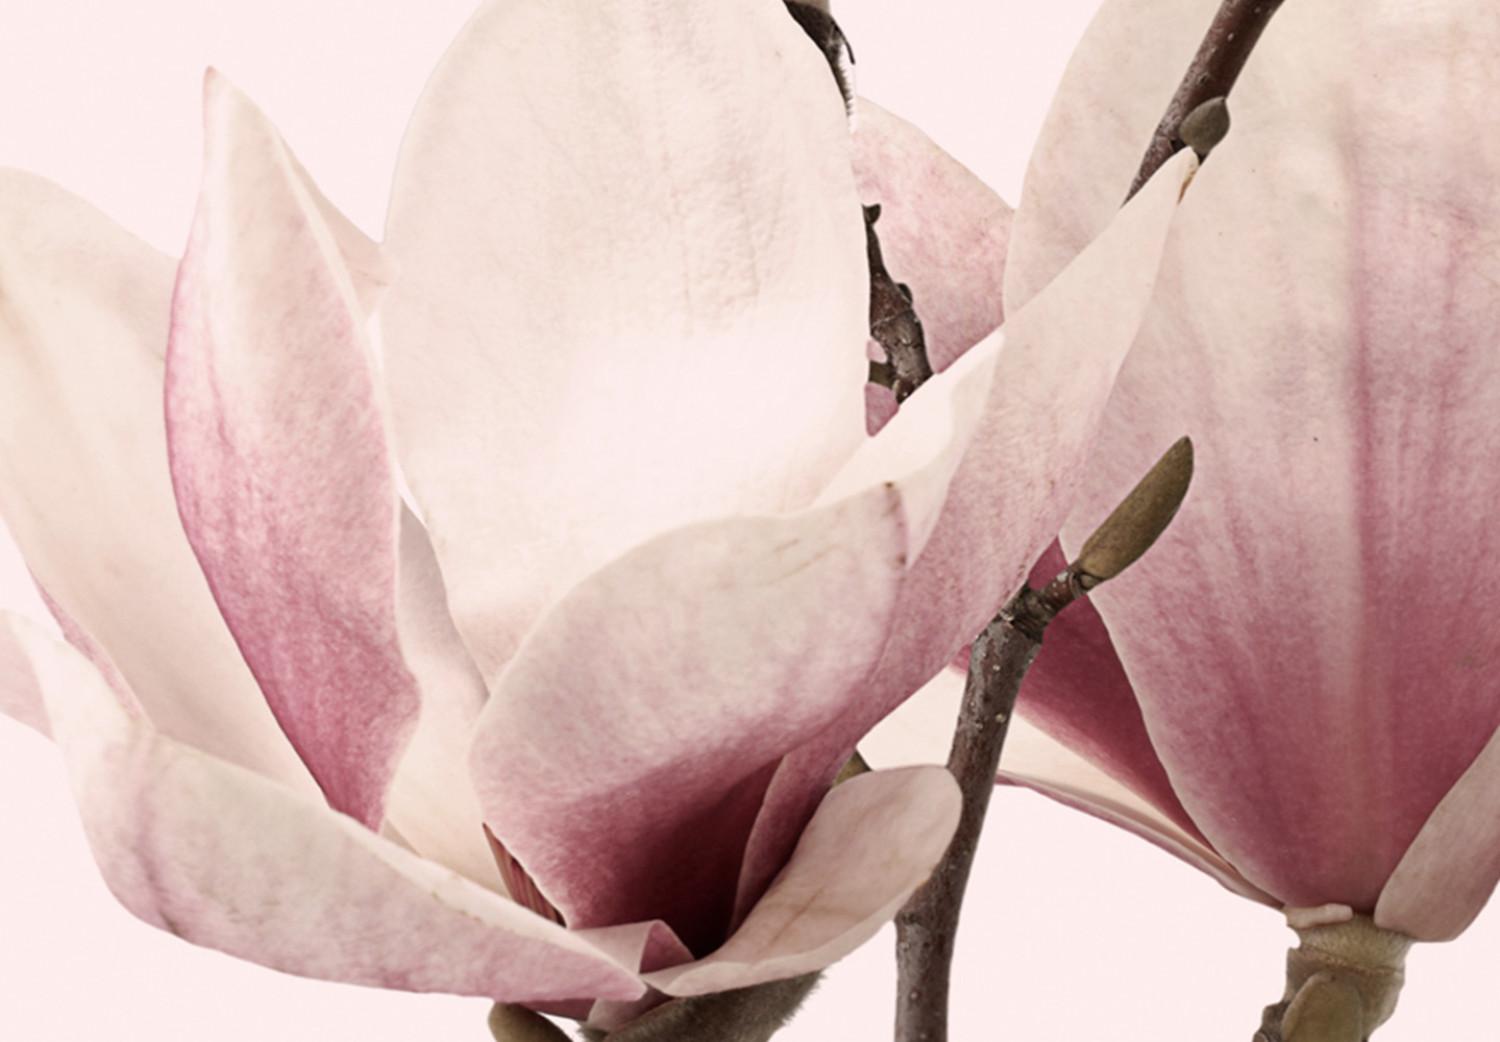 Cuadro Spring Magnolias (3 Parts)